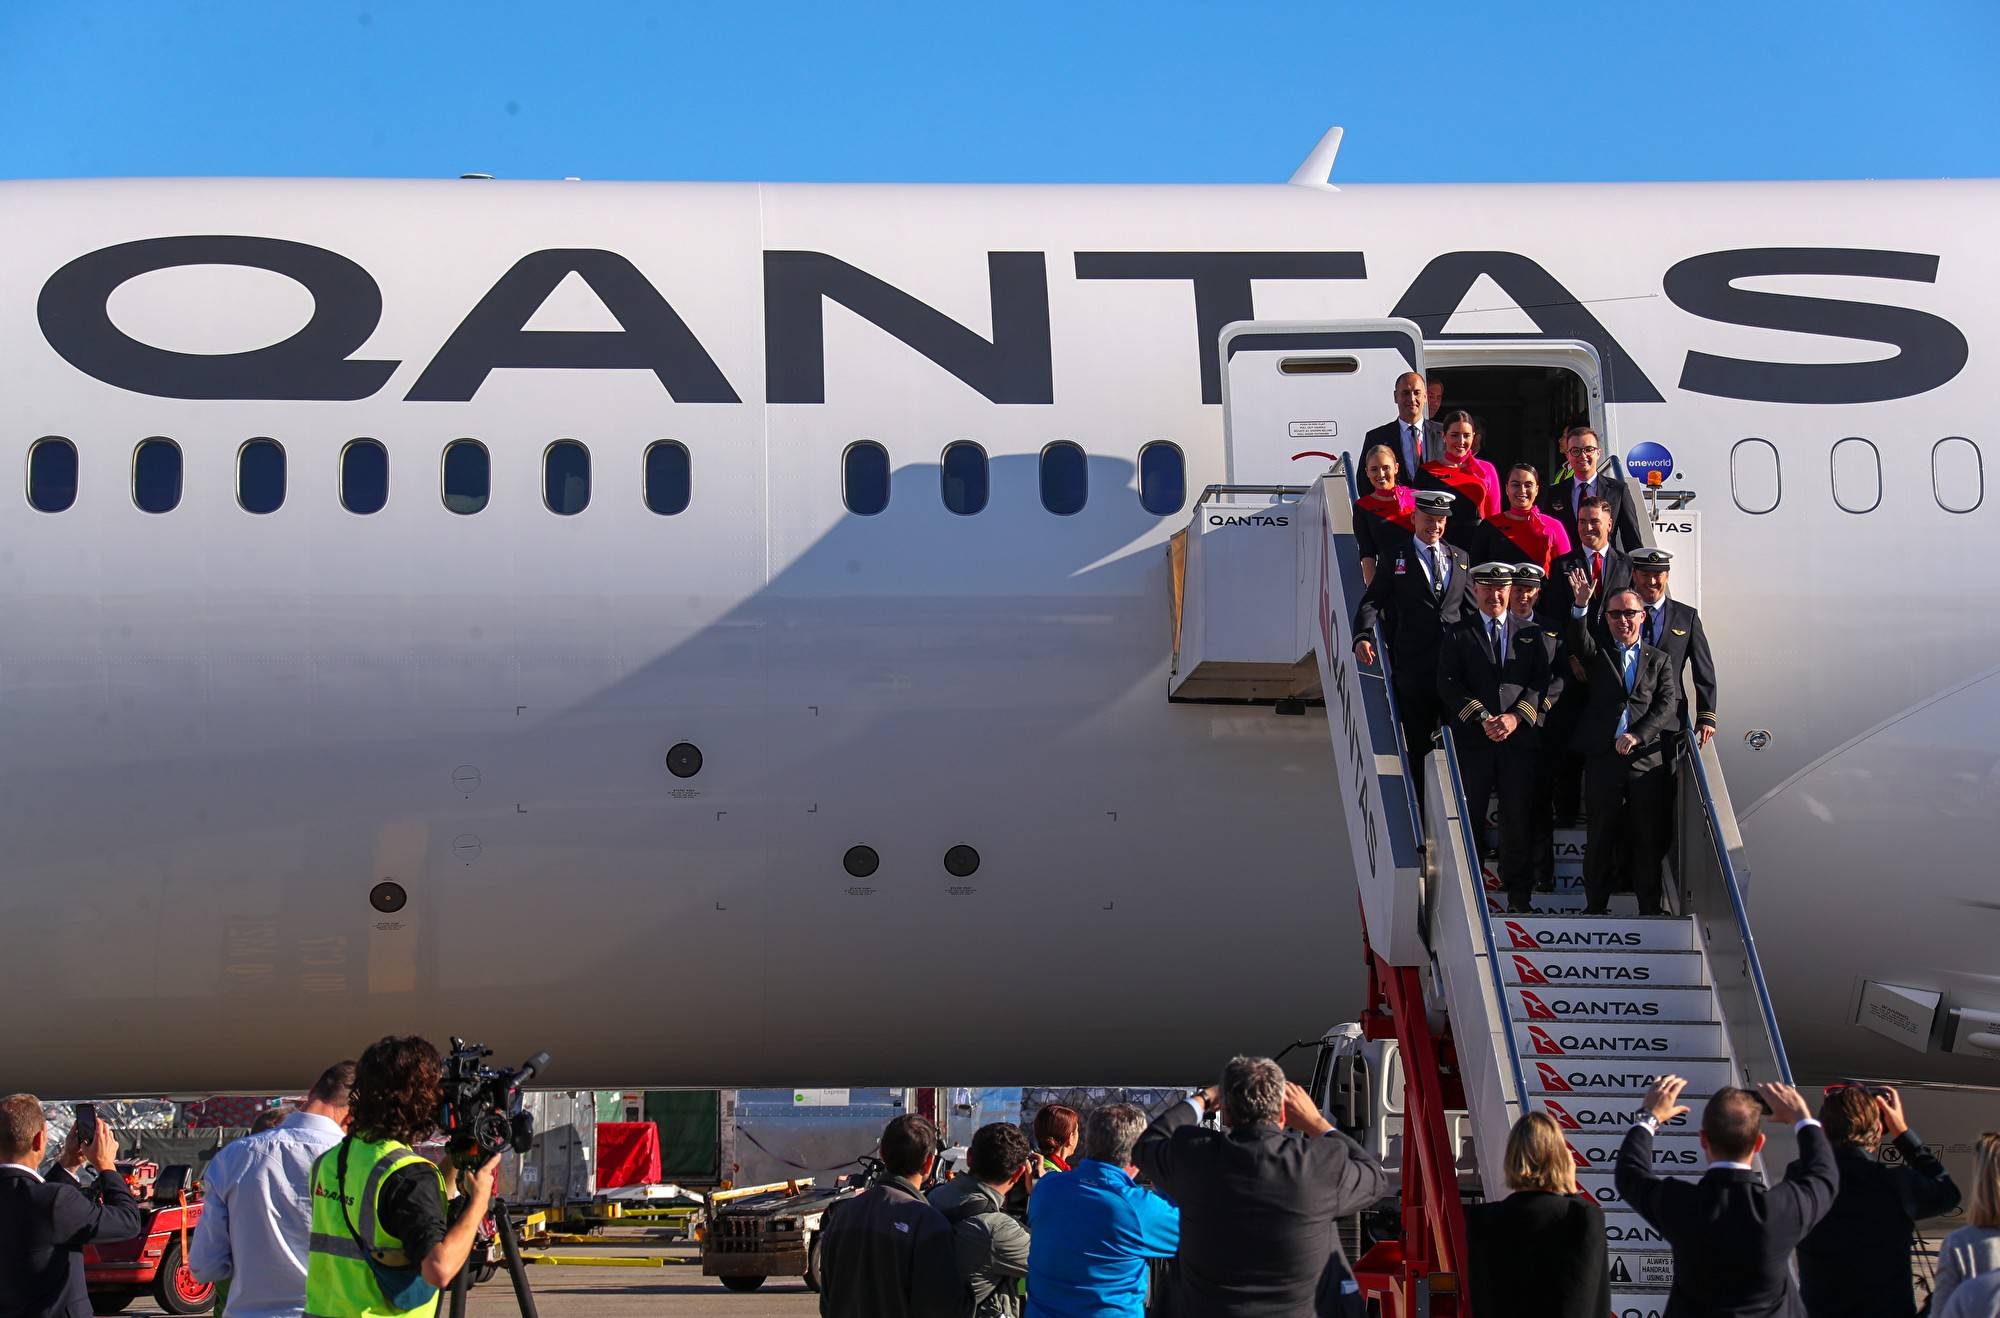 “летающий кенгуру”: 10 интересных фактов об австралийской авиакомпании qantas